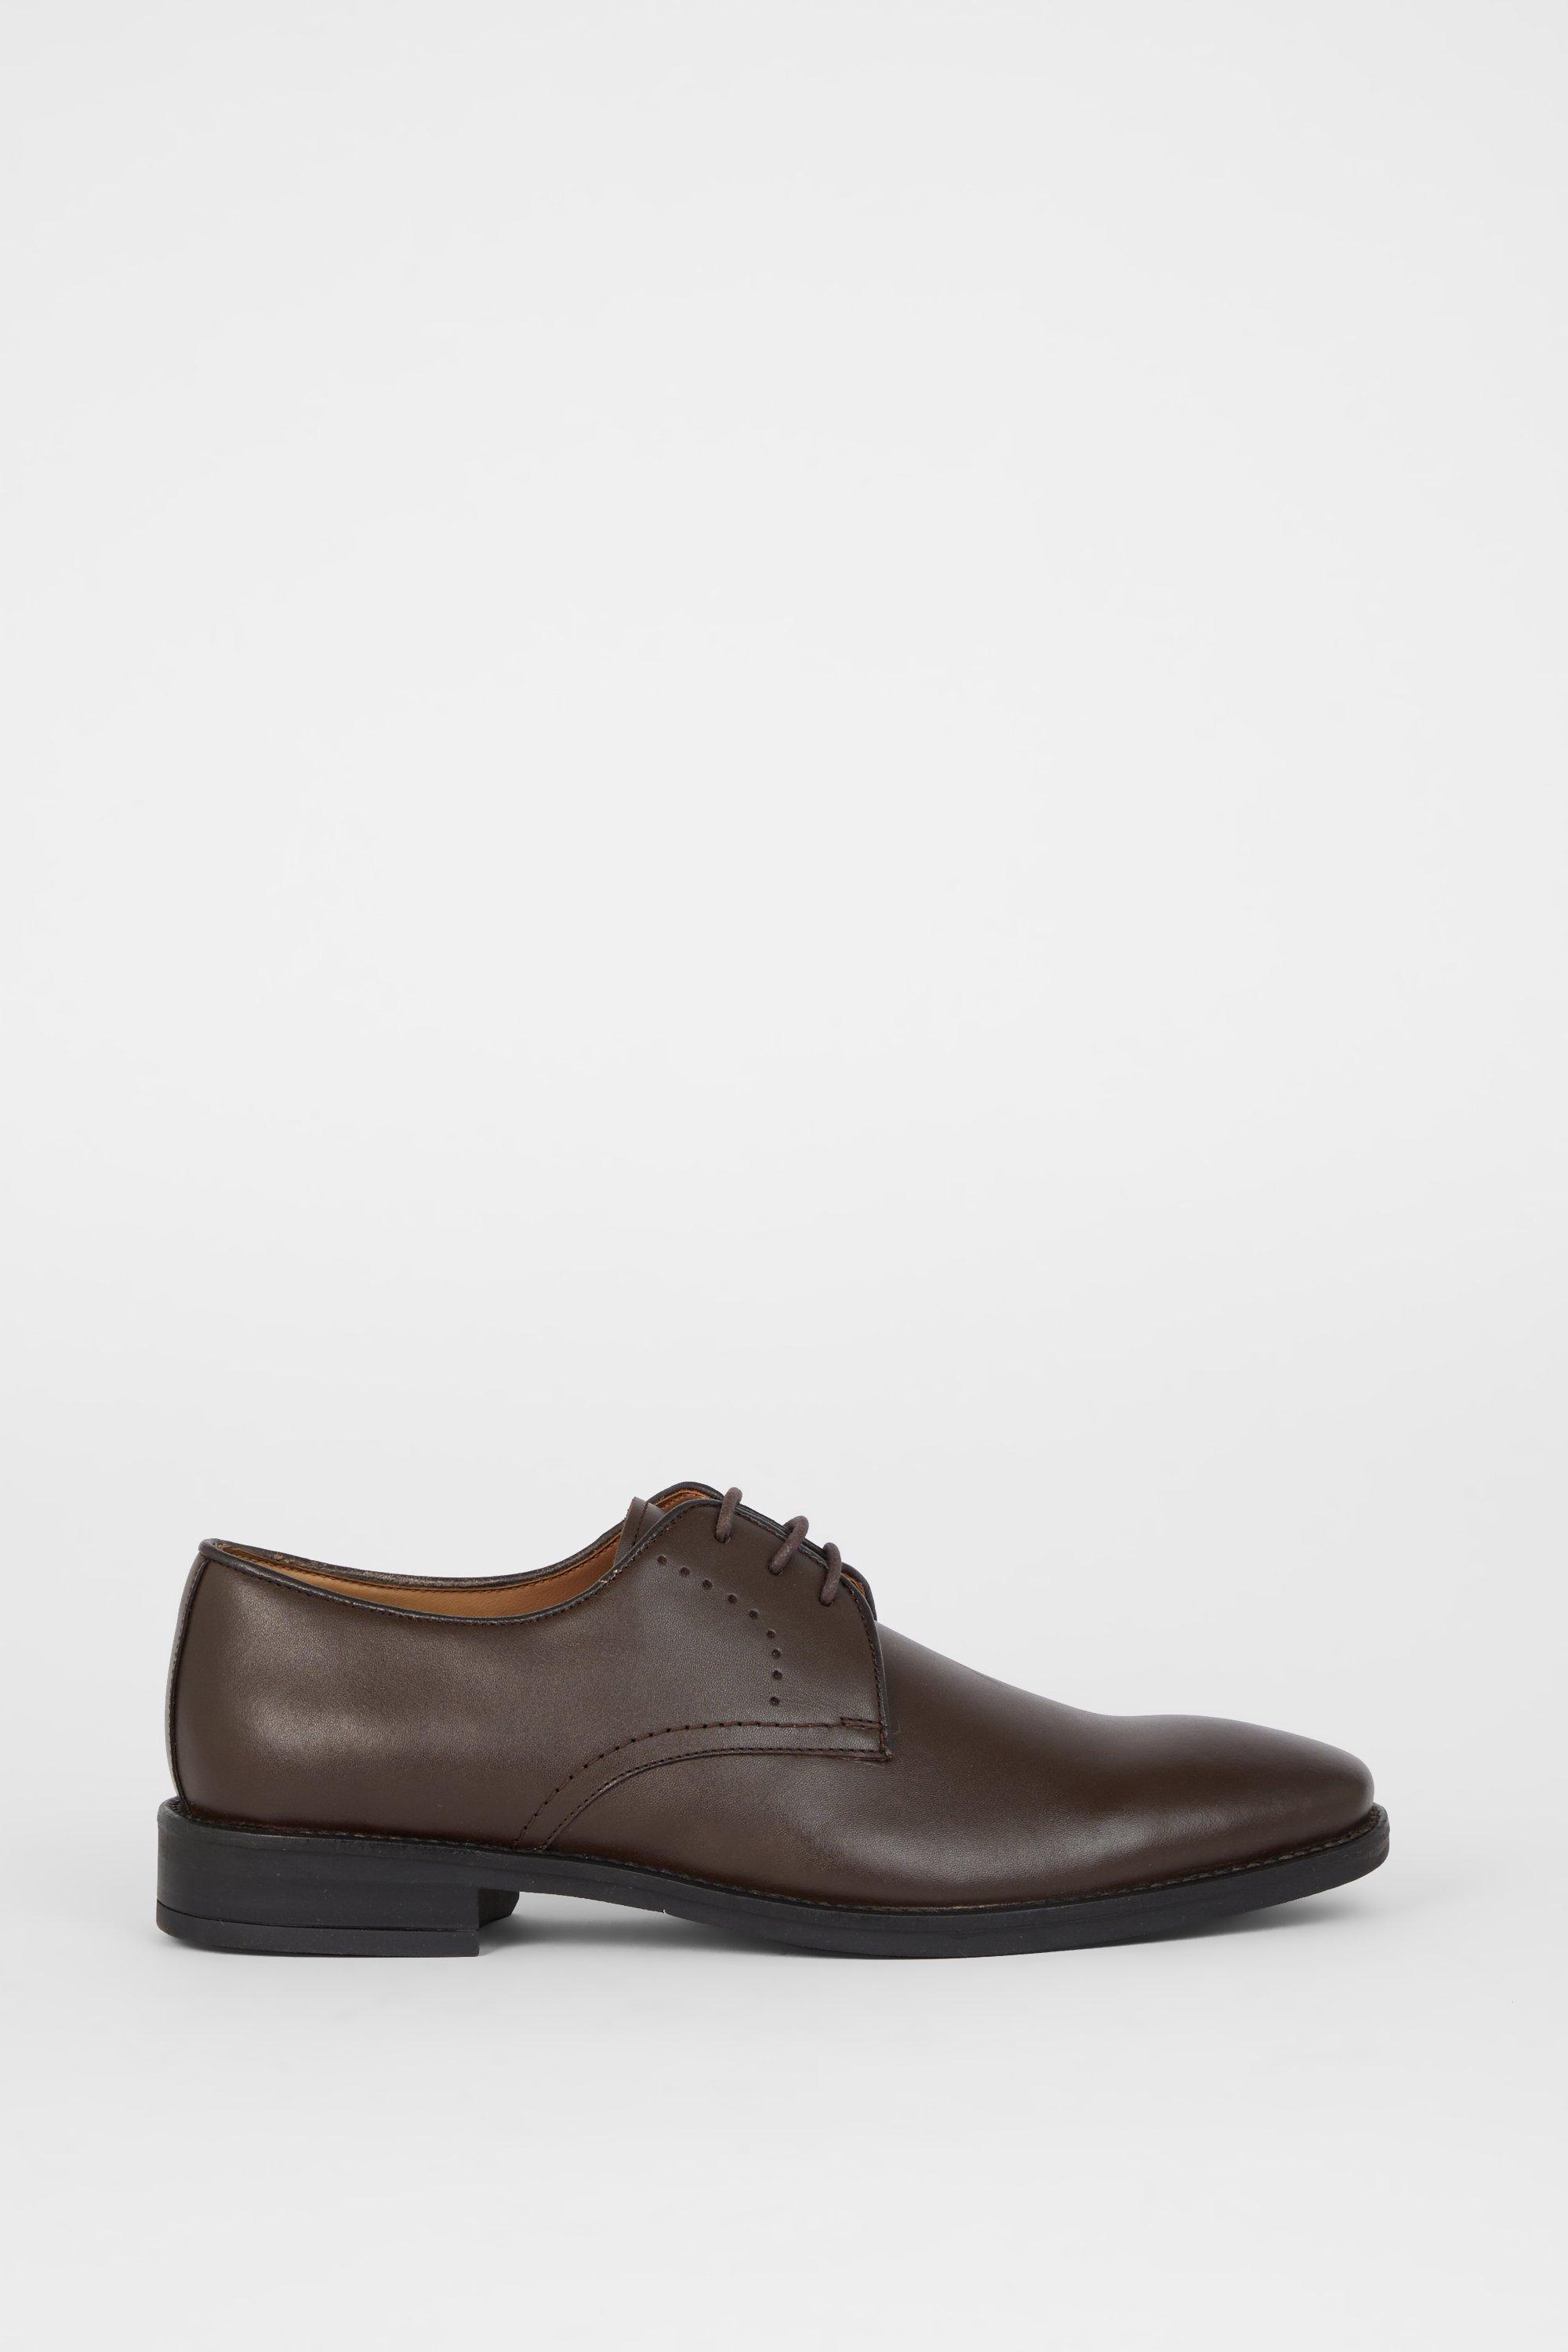 Кожаные туфли дерби Airsoft Comfort с перфорацией на шнуровке Debenhams, коричневый ботинки дерби кожаные на шнуровке 36 черный